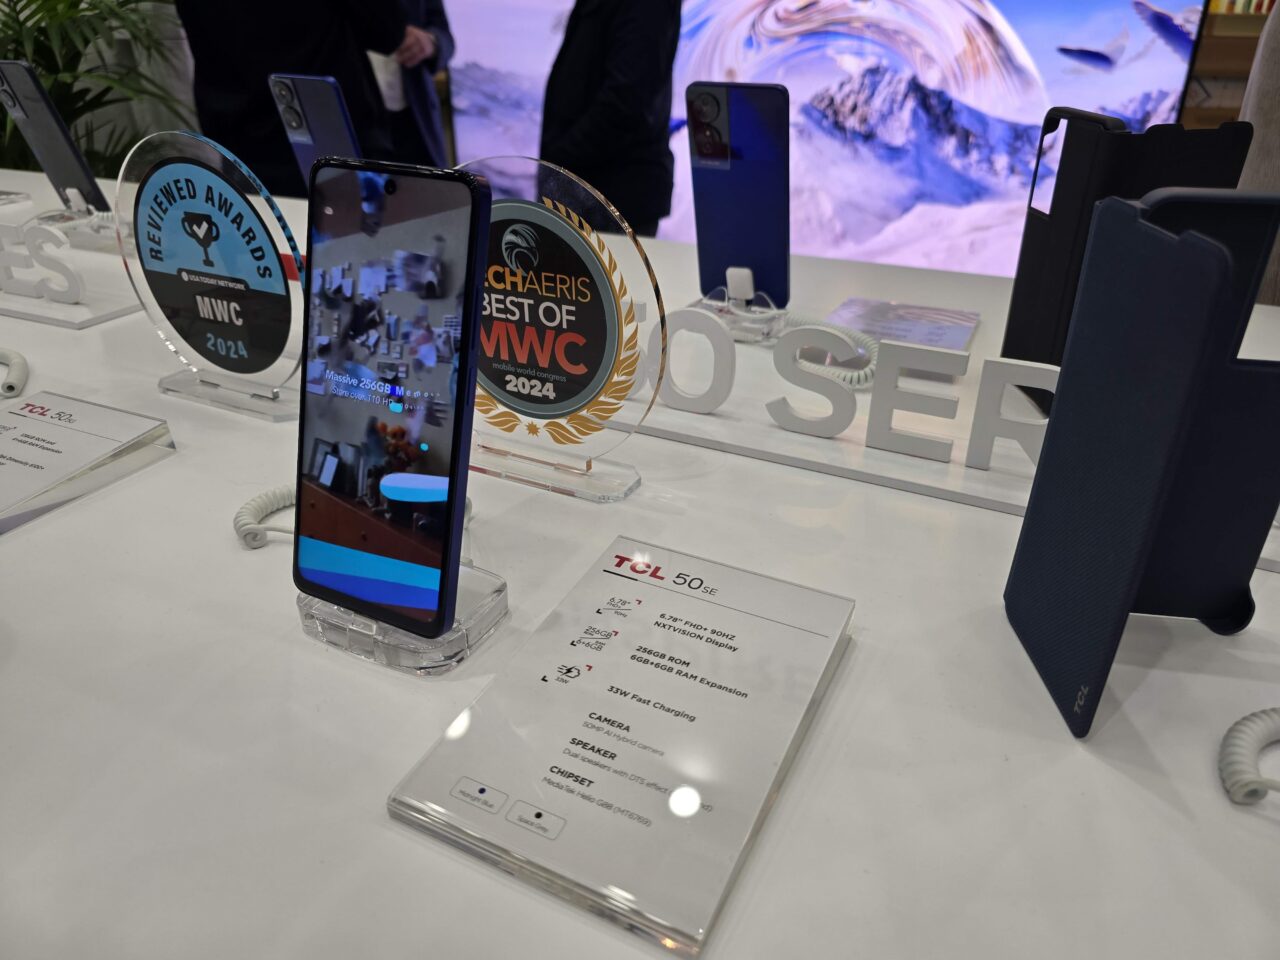 Smartfony wystawione na stoisku, jeden z nich z ekranem skierowanym do przodu, z nagrodami w tle i specyfikacją techniczną na dole.